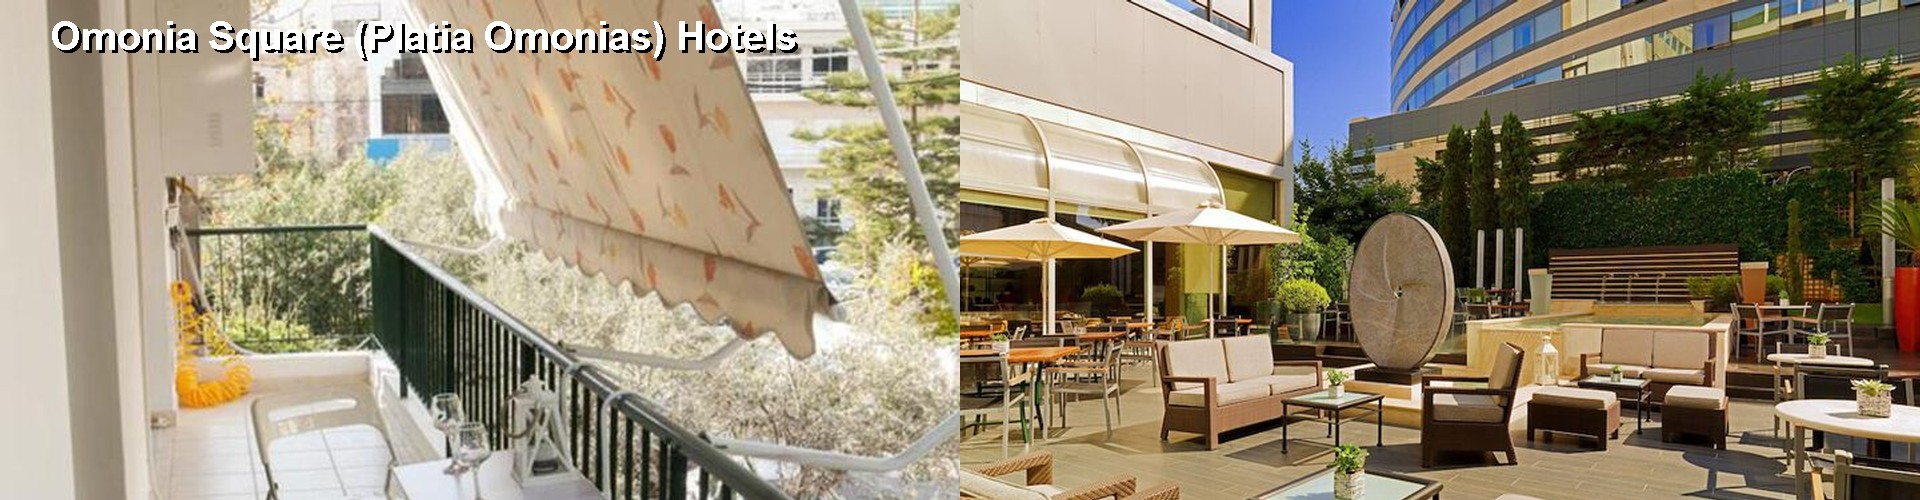 5 Best Hotels near Omonia Square (Platia Omonias)